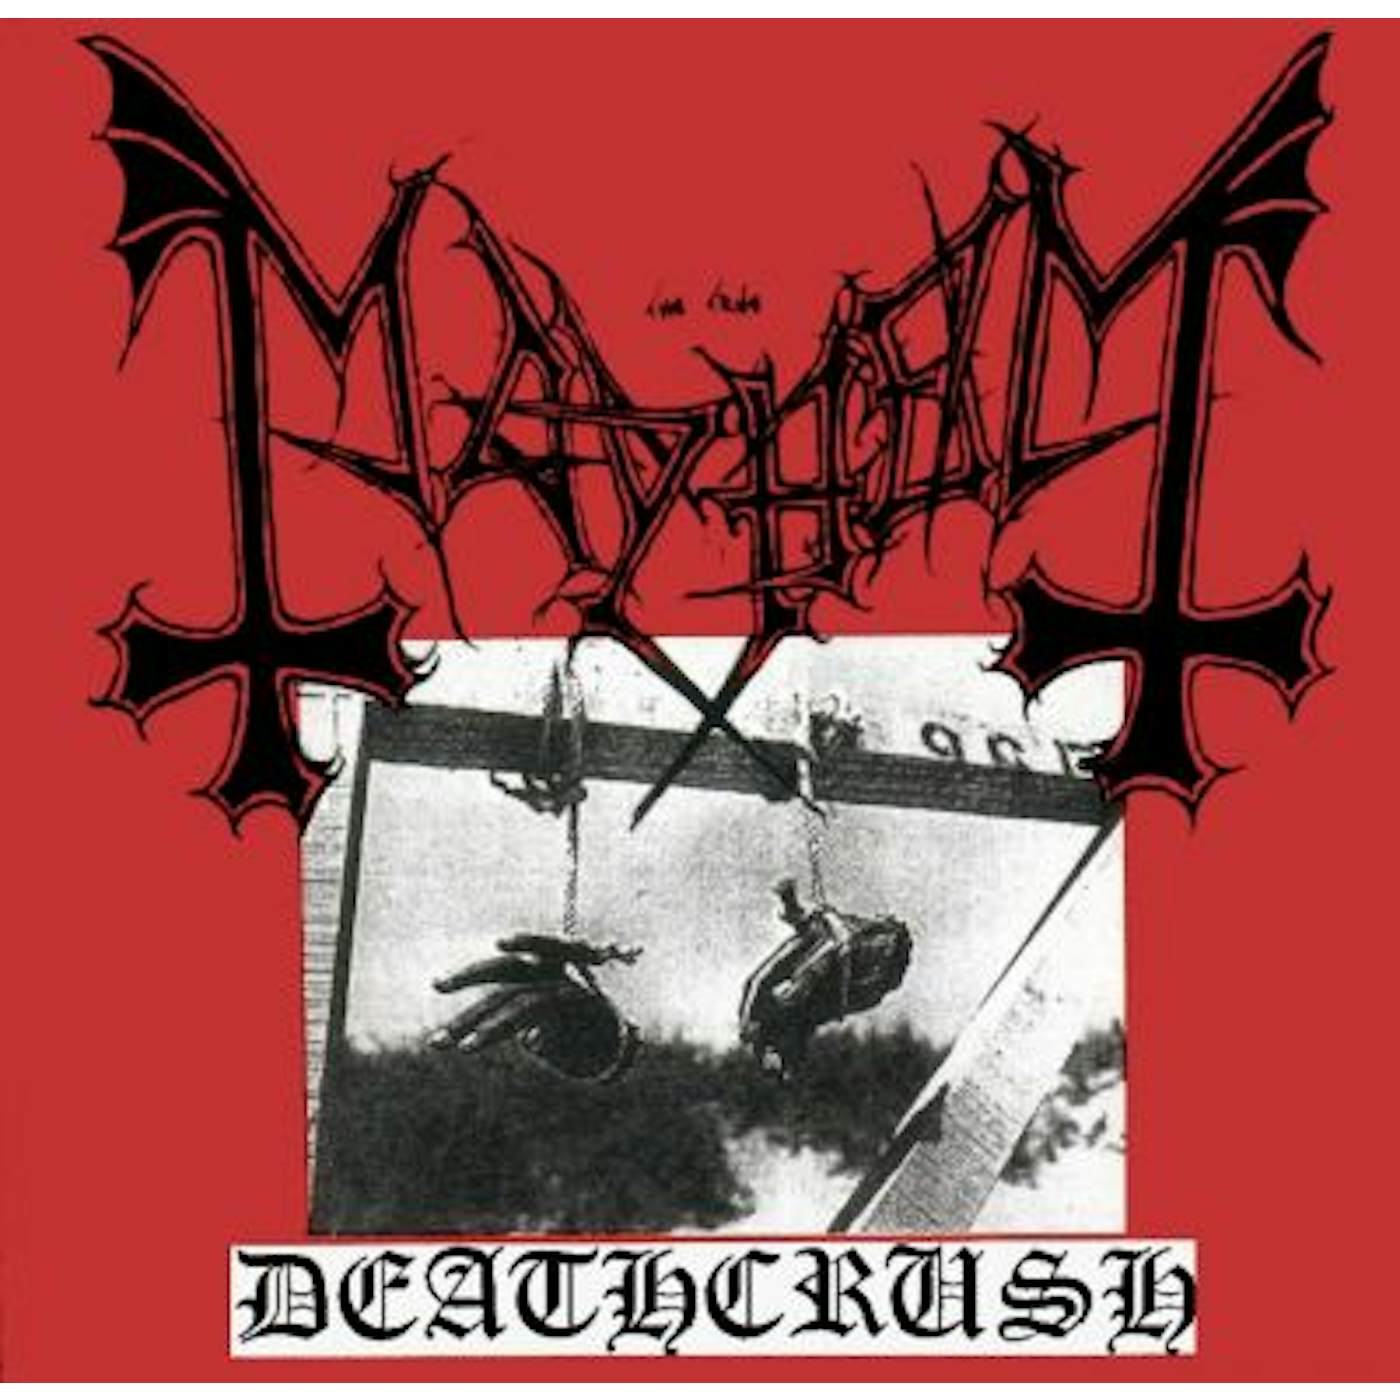 Mayhem DEATHCRUSH CD